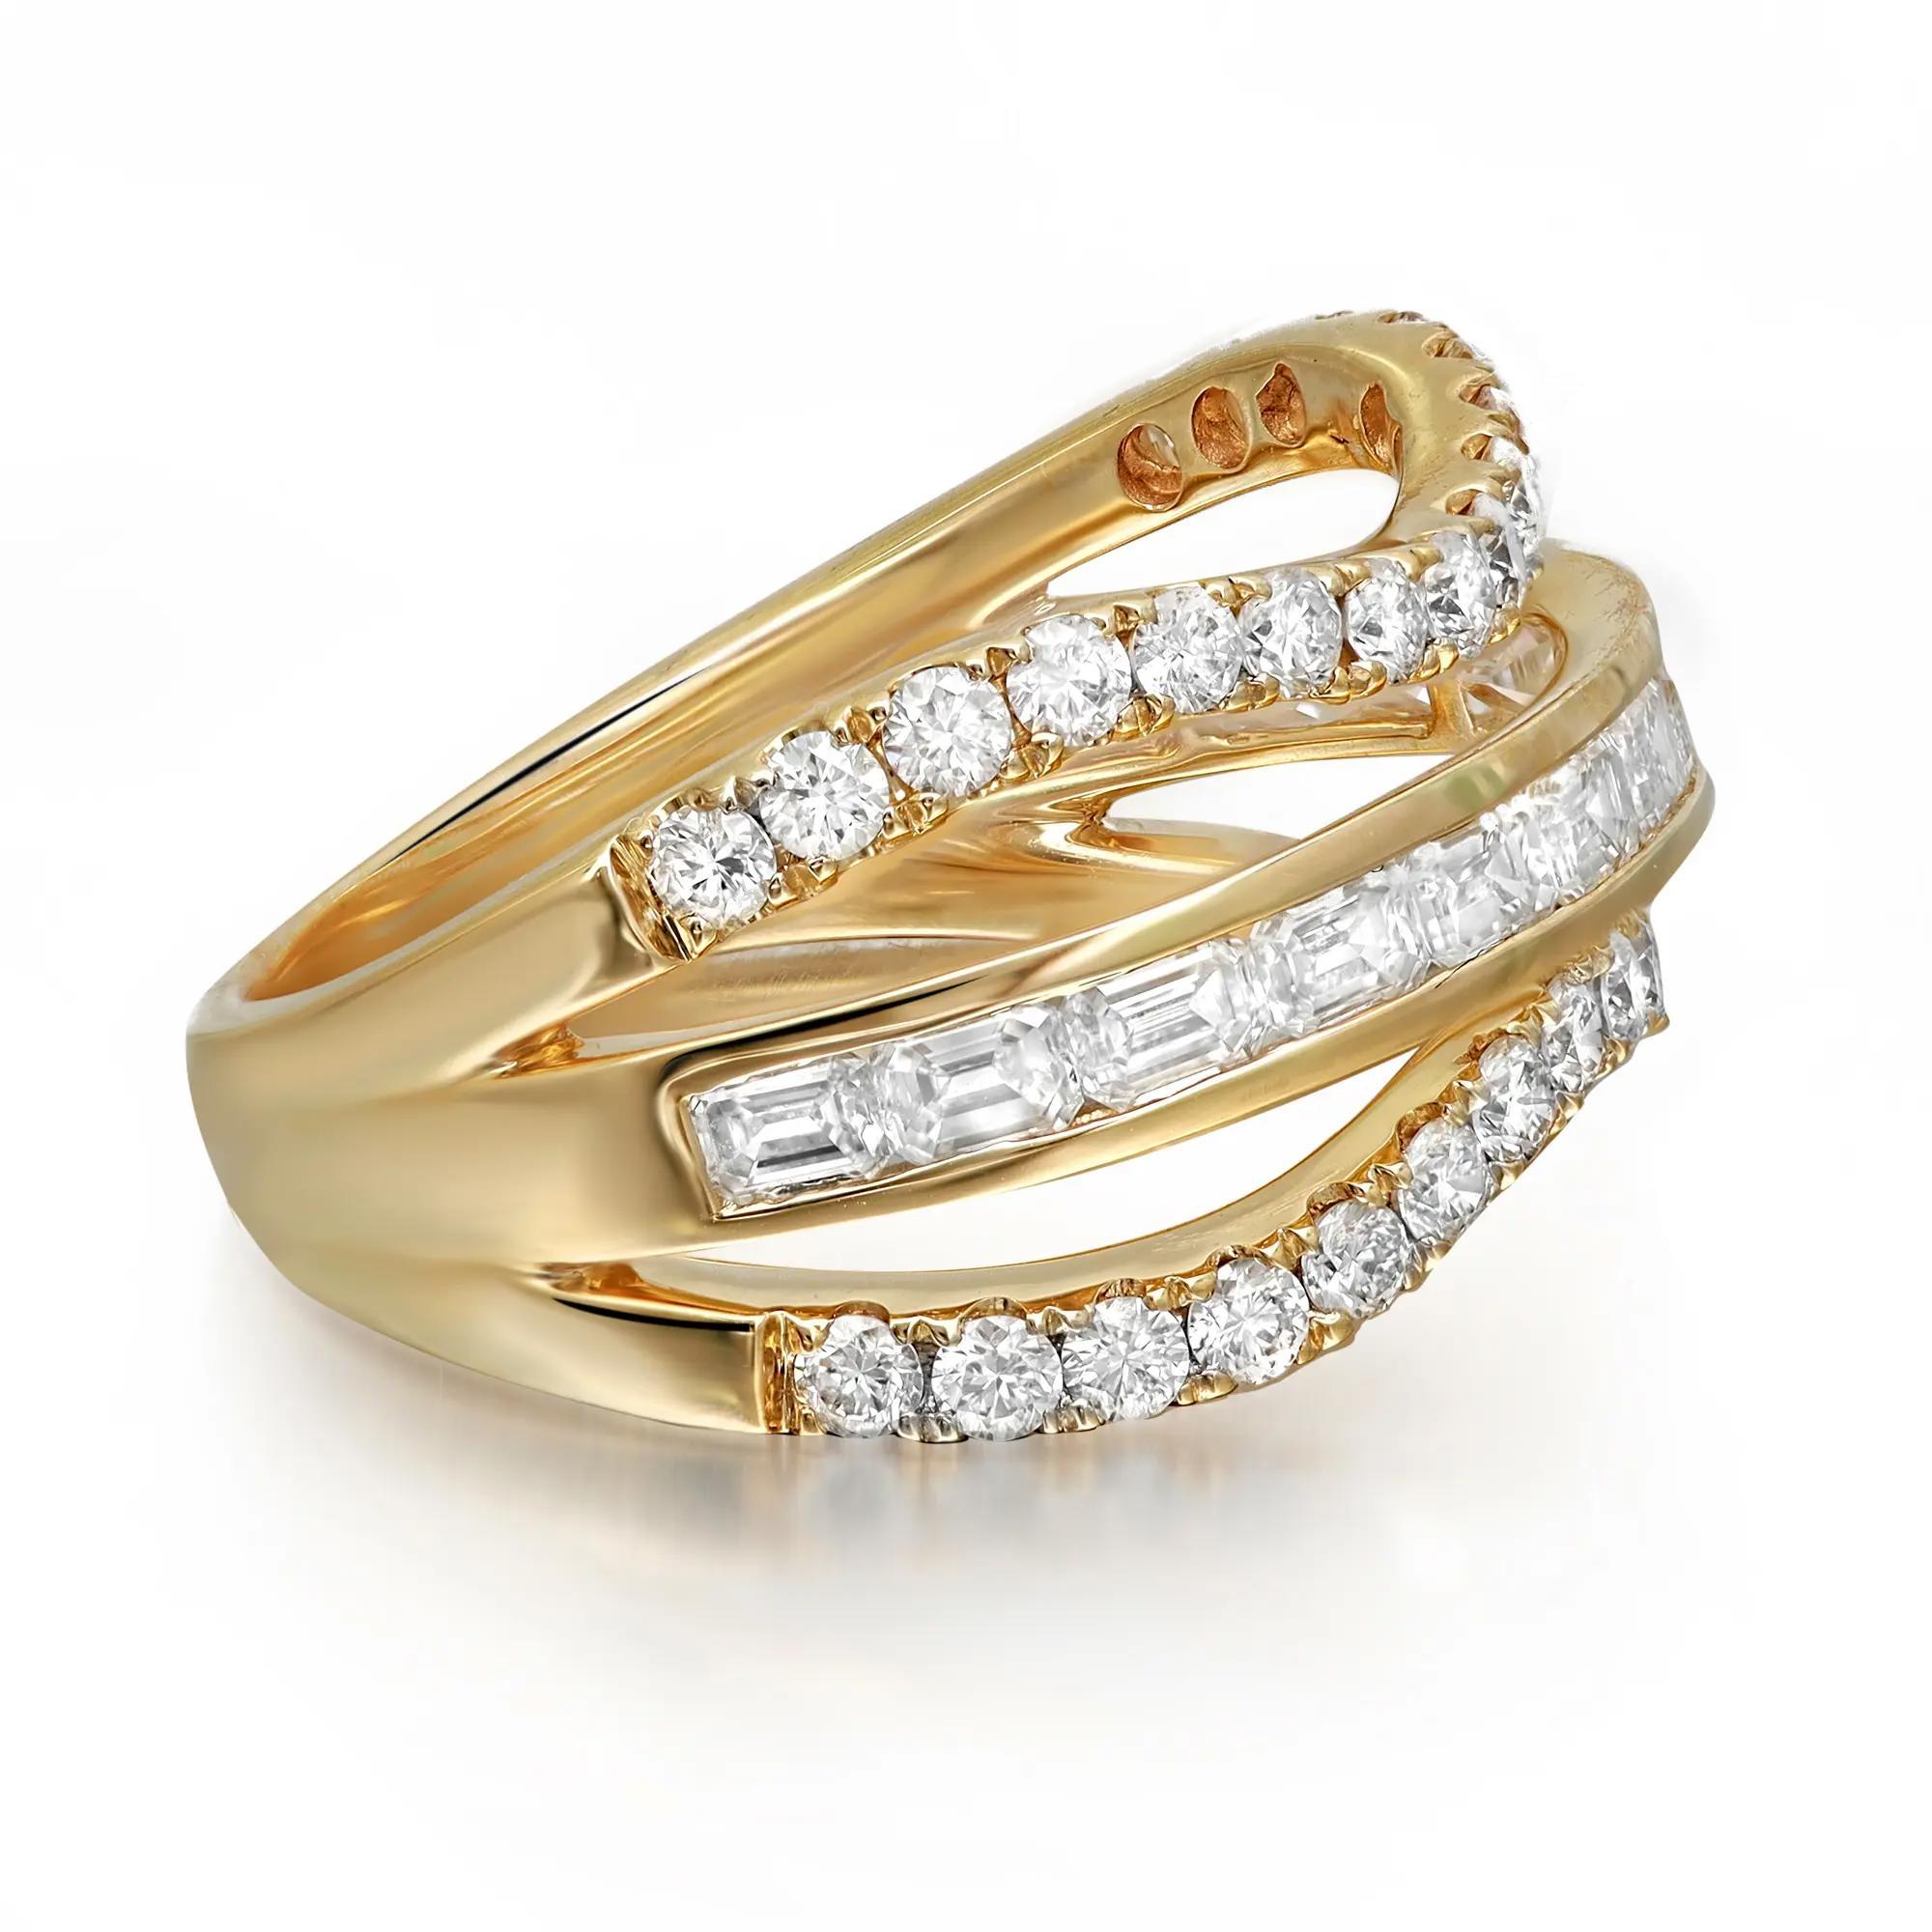 Dieser schimmernde und elegante Diamantring ist der perfekte Begleiter für jede Gelegenheit. Gefertigt aus glänzendem 18-karätigem Gelbgold. Dieser wunderschöne Ring ist in der Mitte mit Diamanten im Smaragdschliff und zwei geschwungenen Reihen